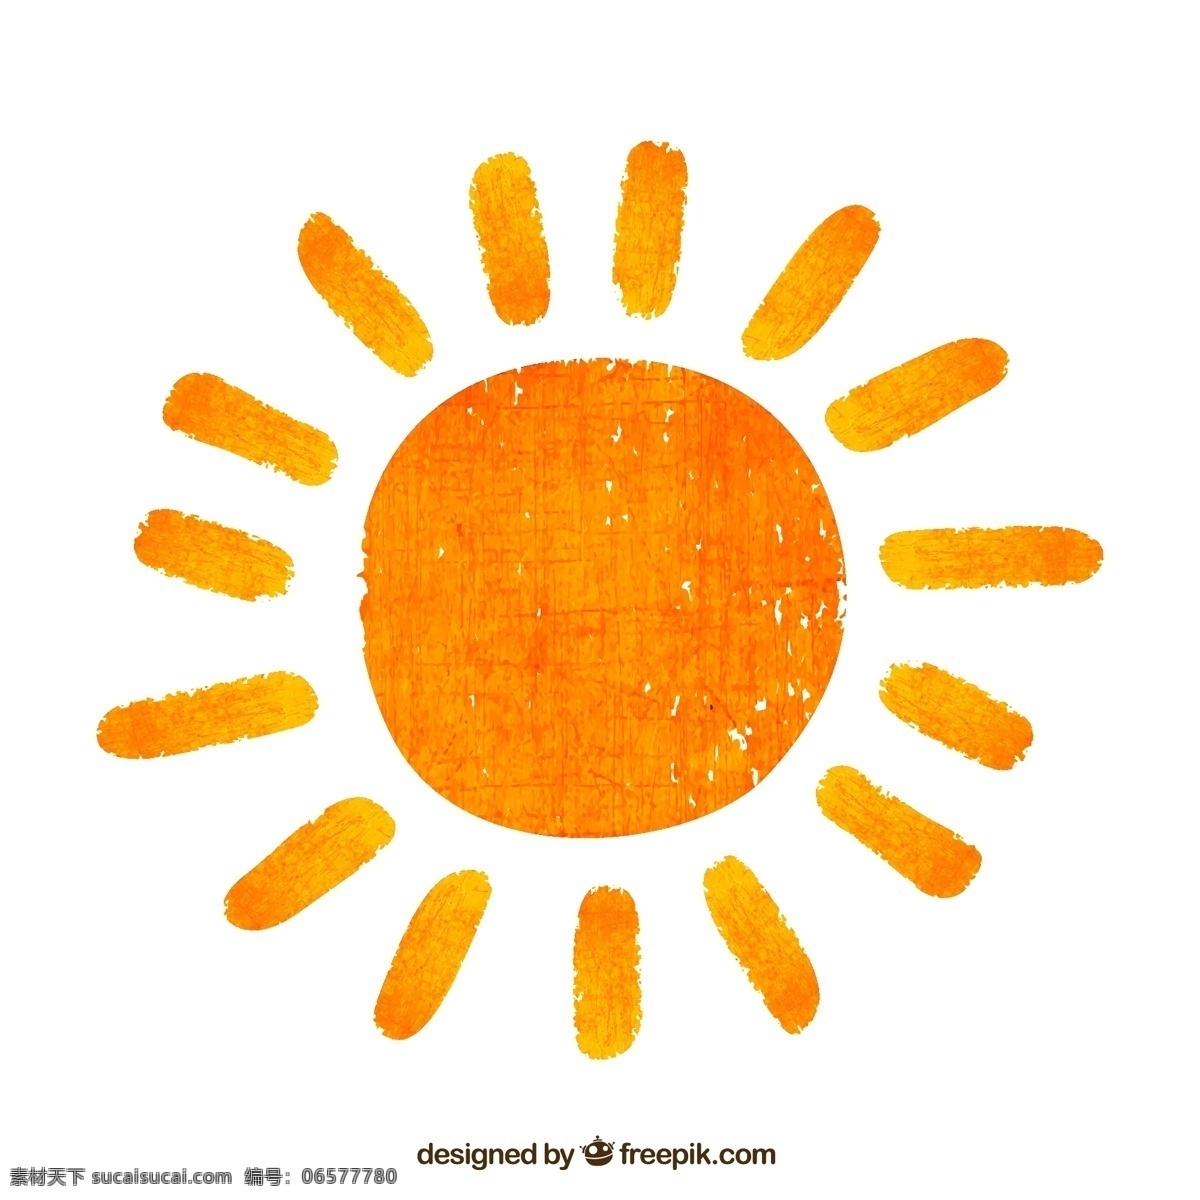 橙色 手绘 太阳 矢量 手绘插画 矢量素材 创意手绘画